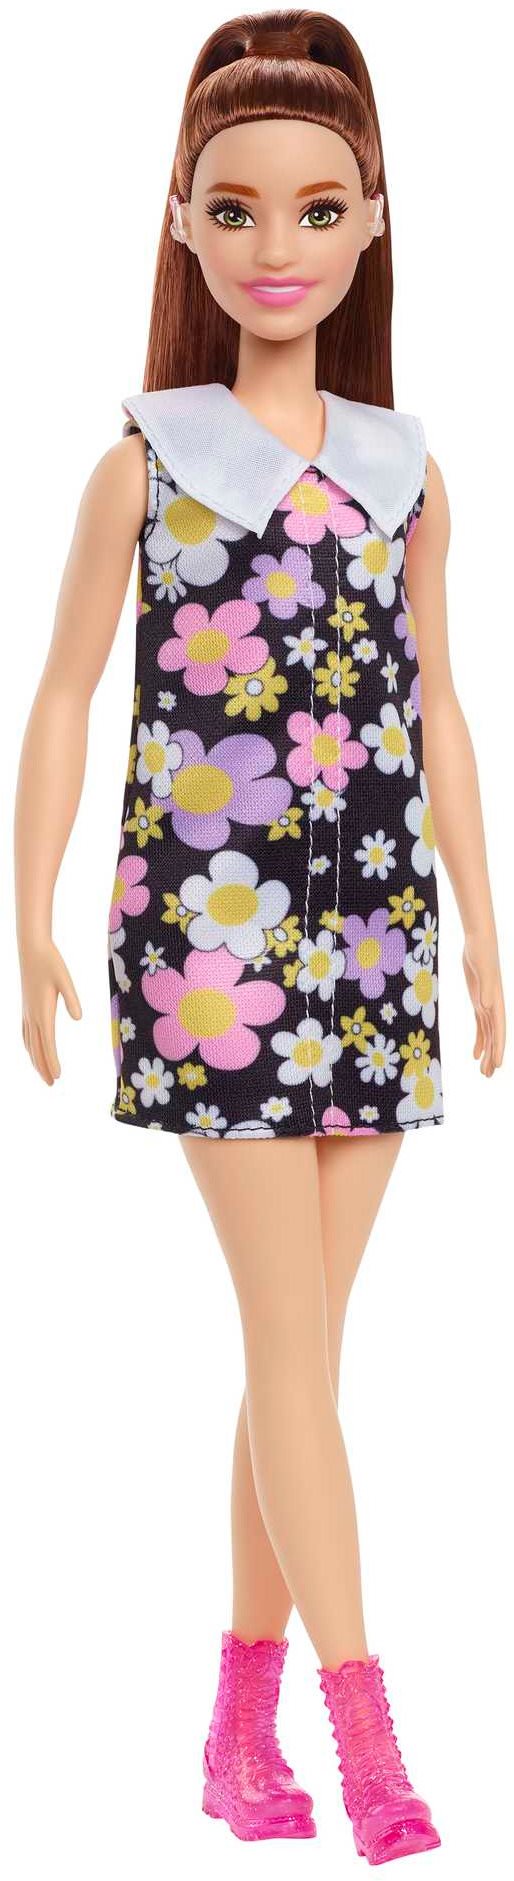 Barbie Modell - Százszorszépes ruha